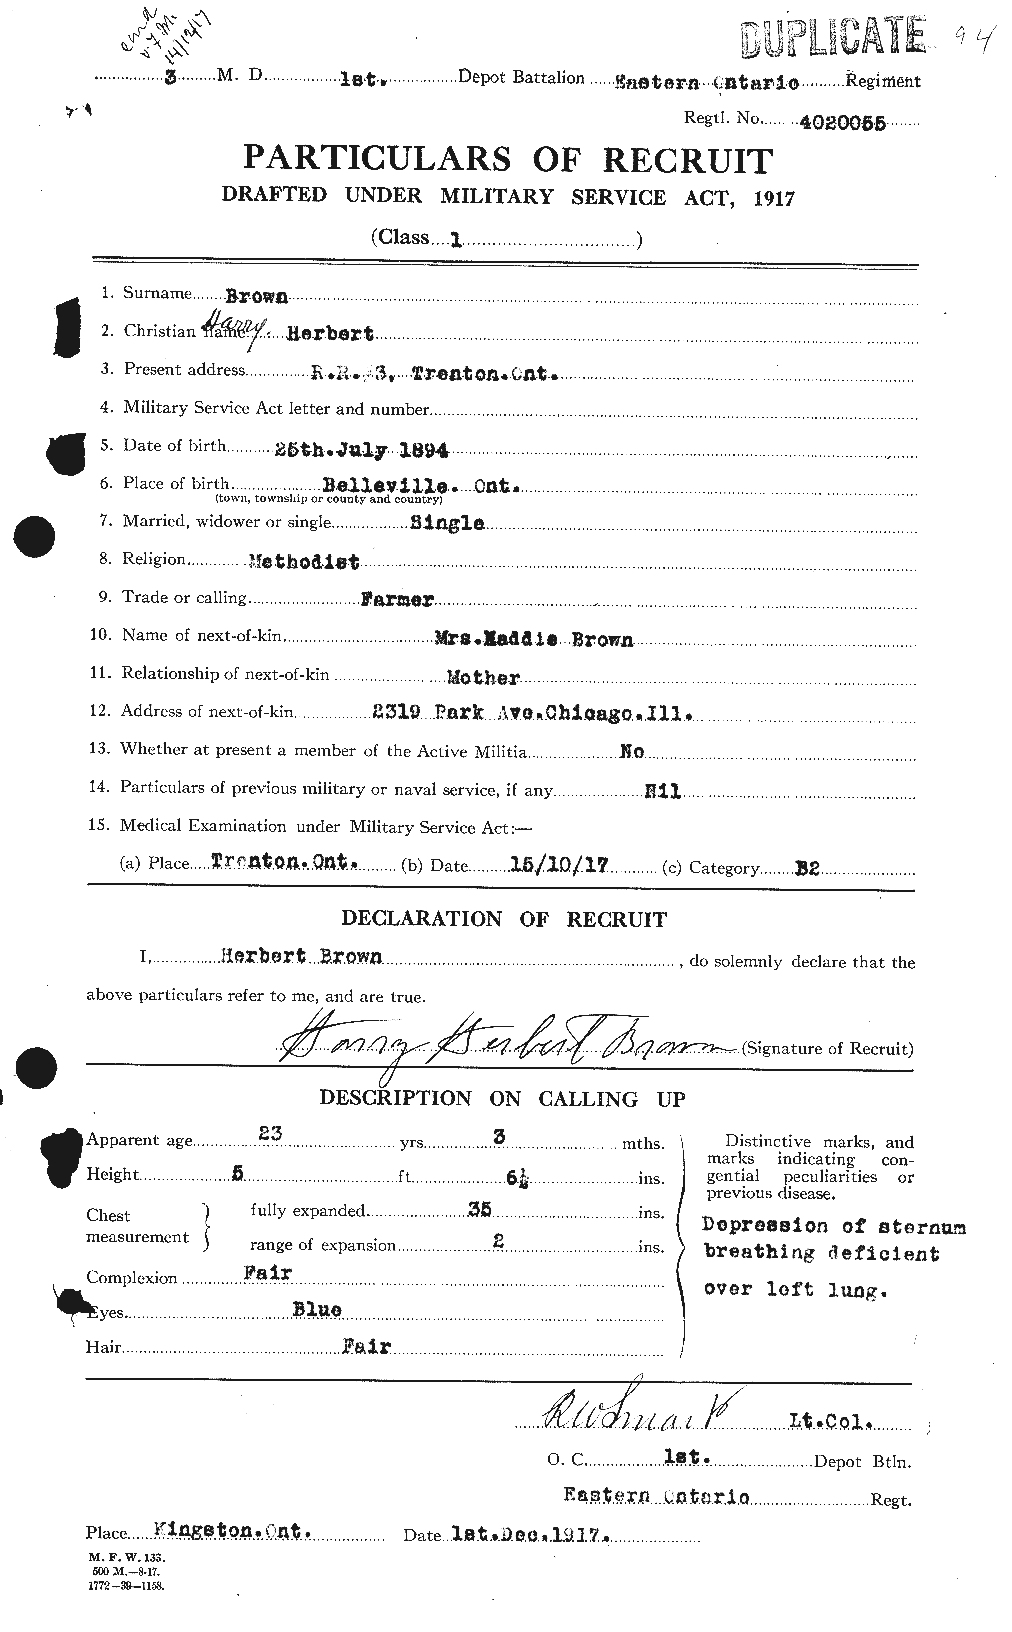 Dossiers du Personnel de la Première Guerre mondiale - CEC 265551a